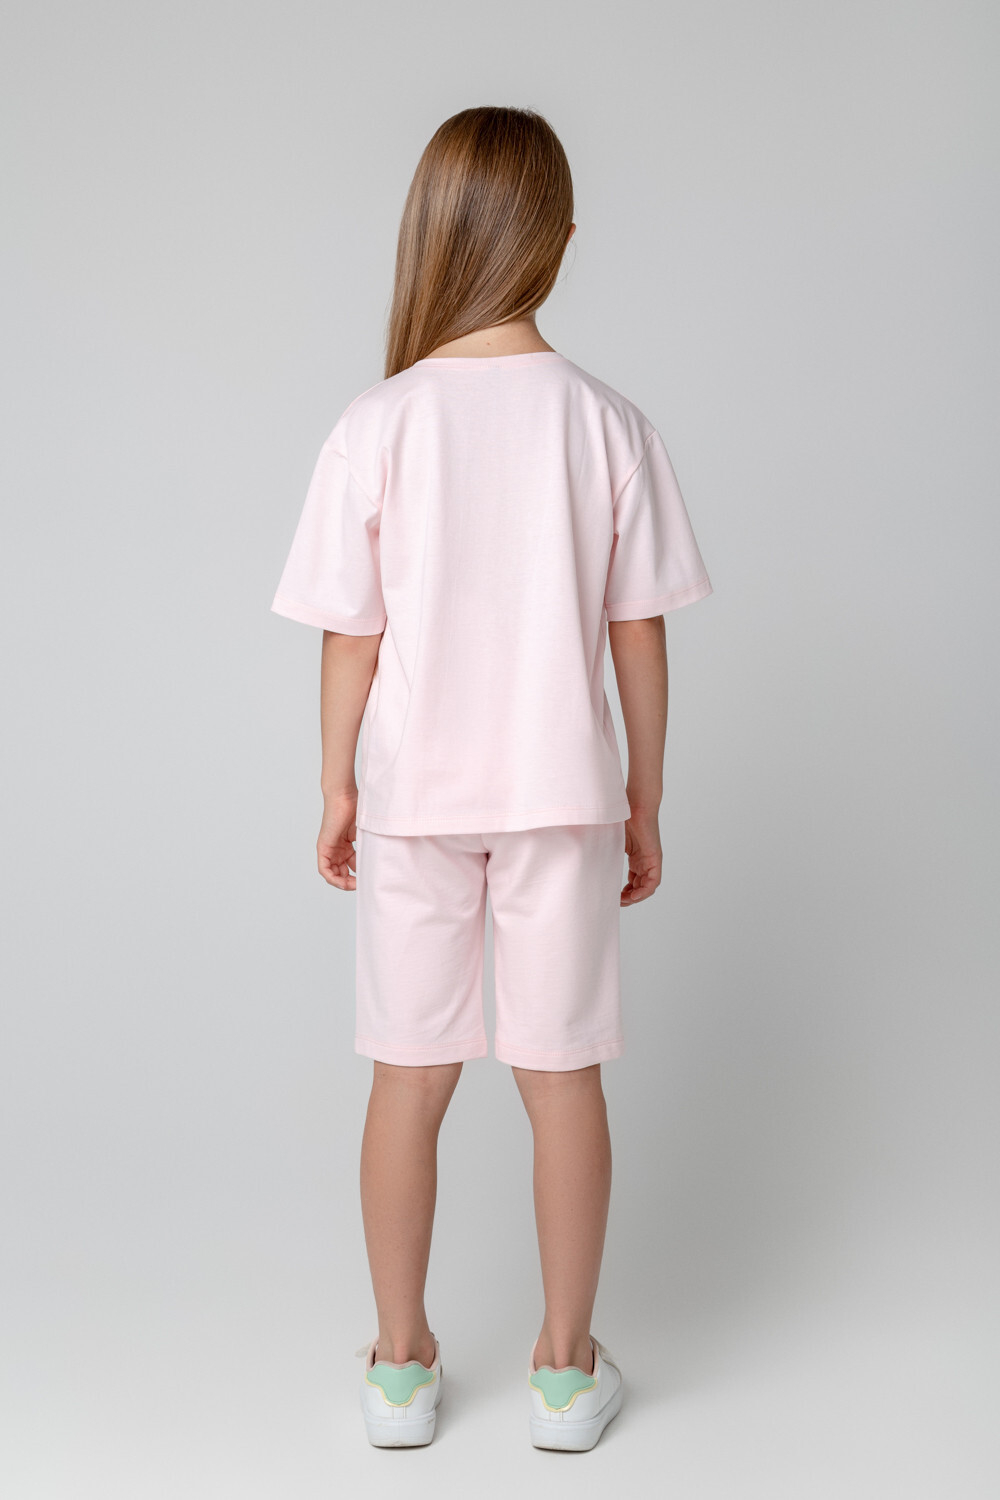 КР 400532/светло-розовый к381 шорты для девочки